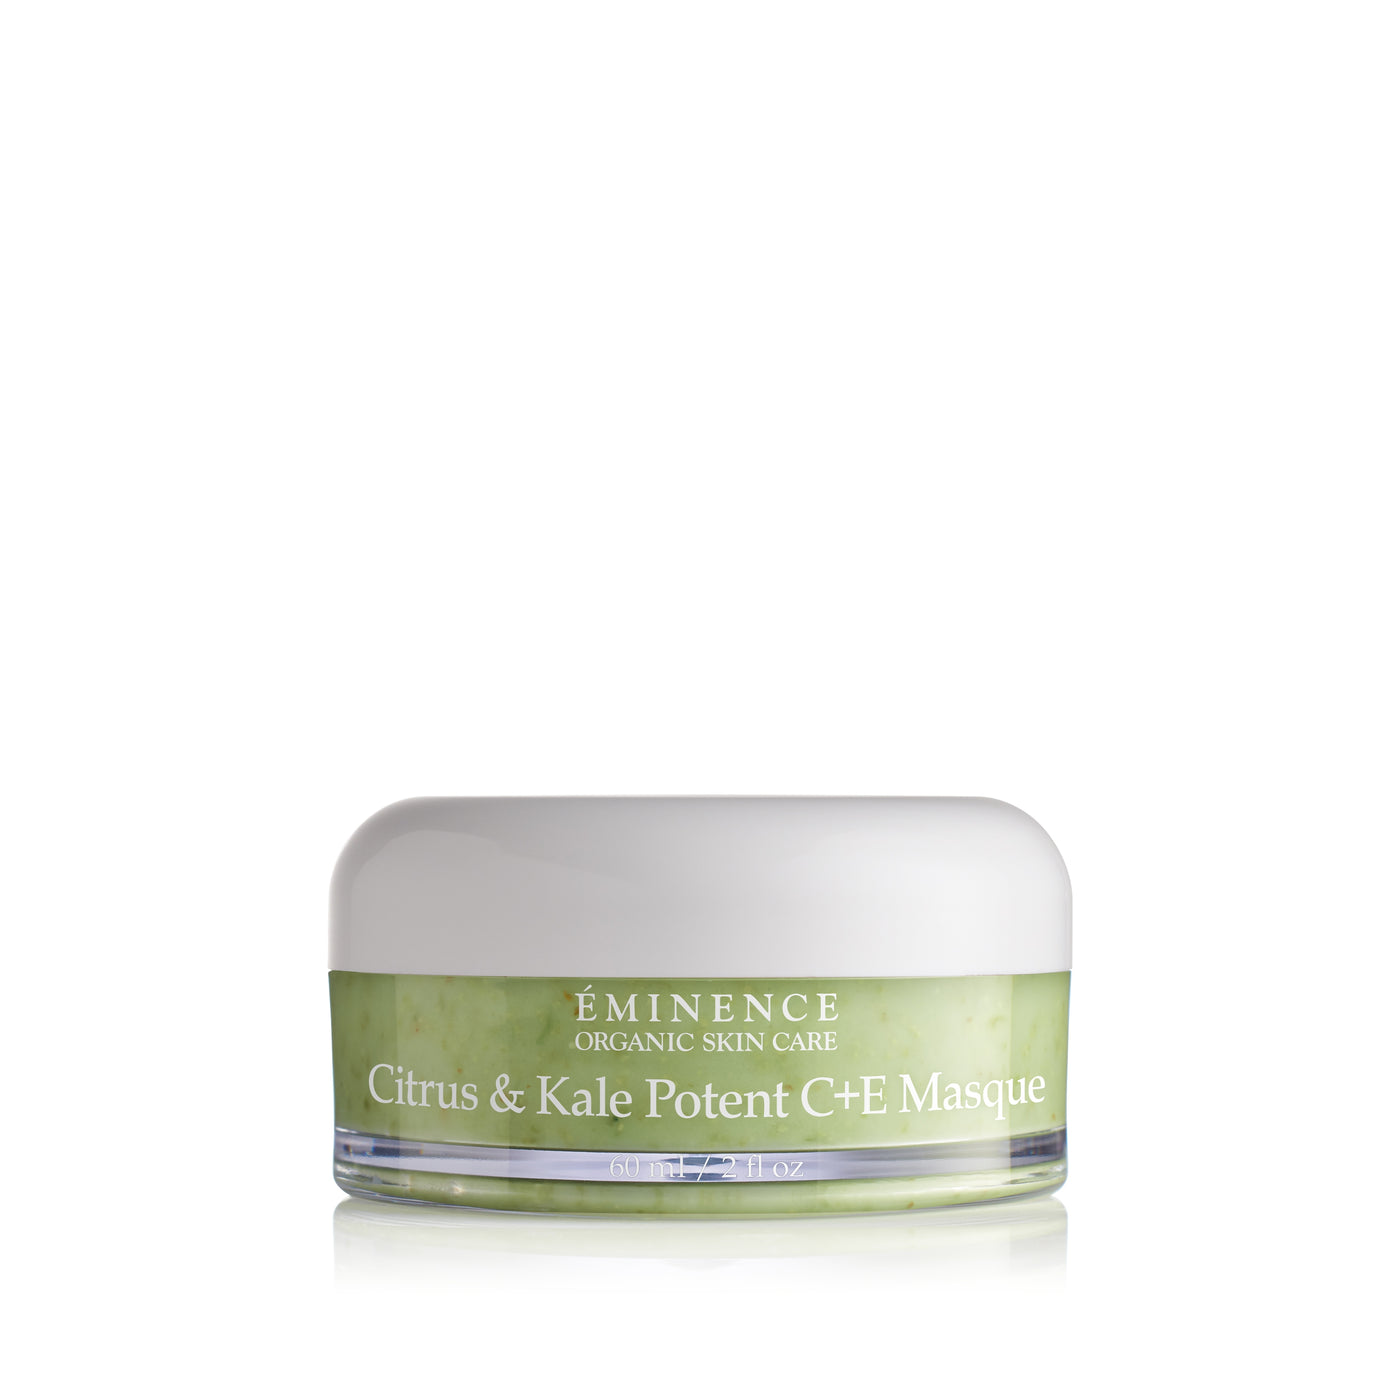 Eminence Organics Citrus & Kale Potent C+E Masque - Radiance Clean Beauty